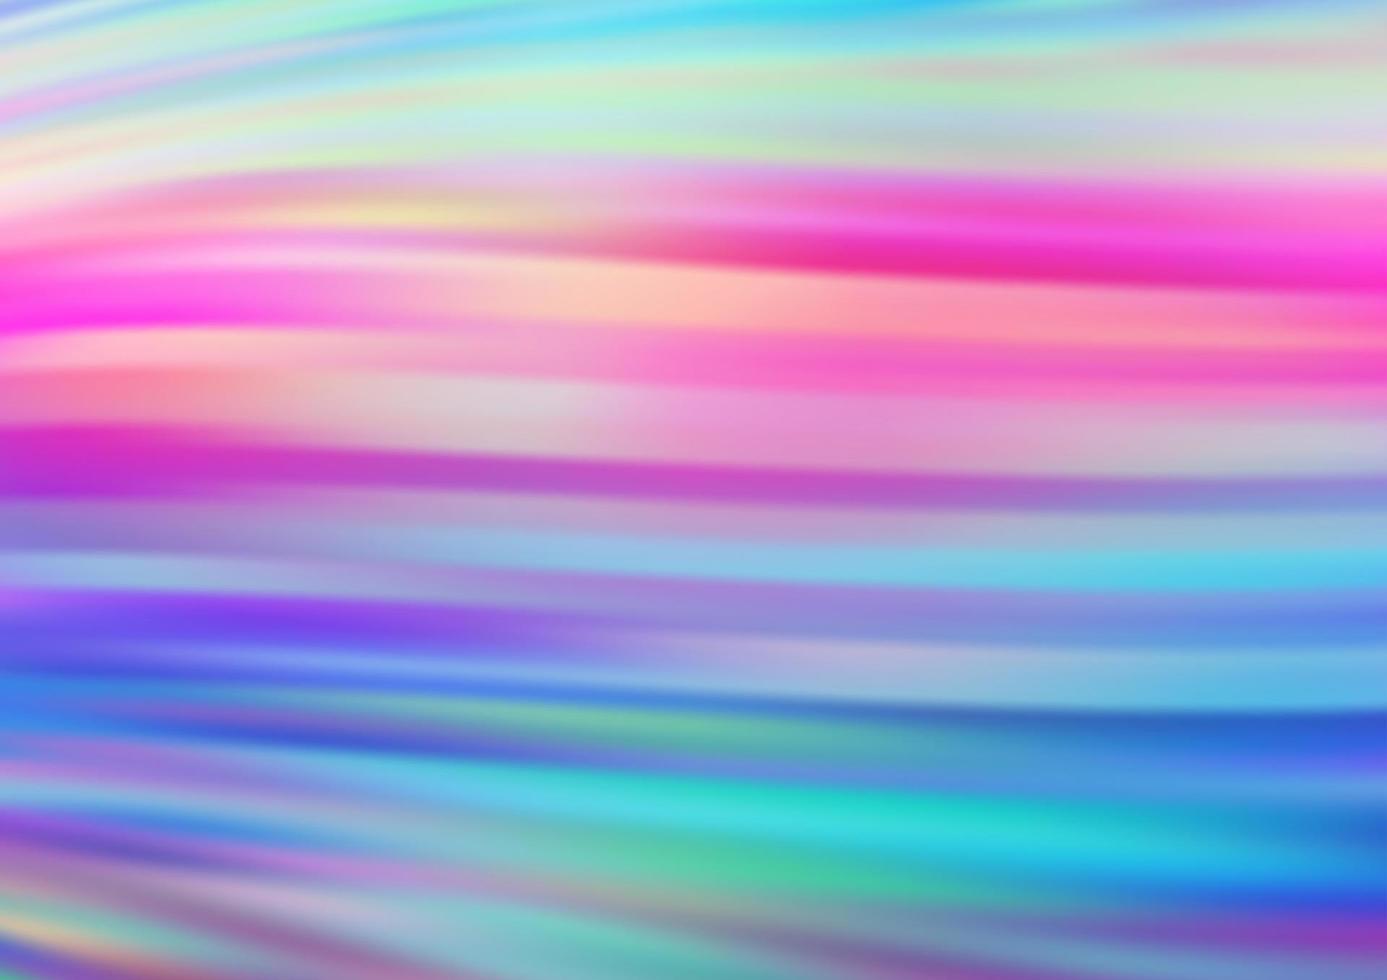 ljus mångfärgad, regnbåge vektor bakgrund med böjda linjer.